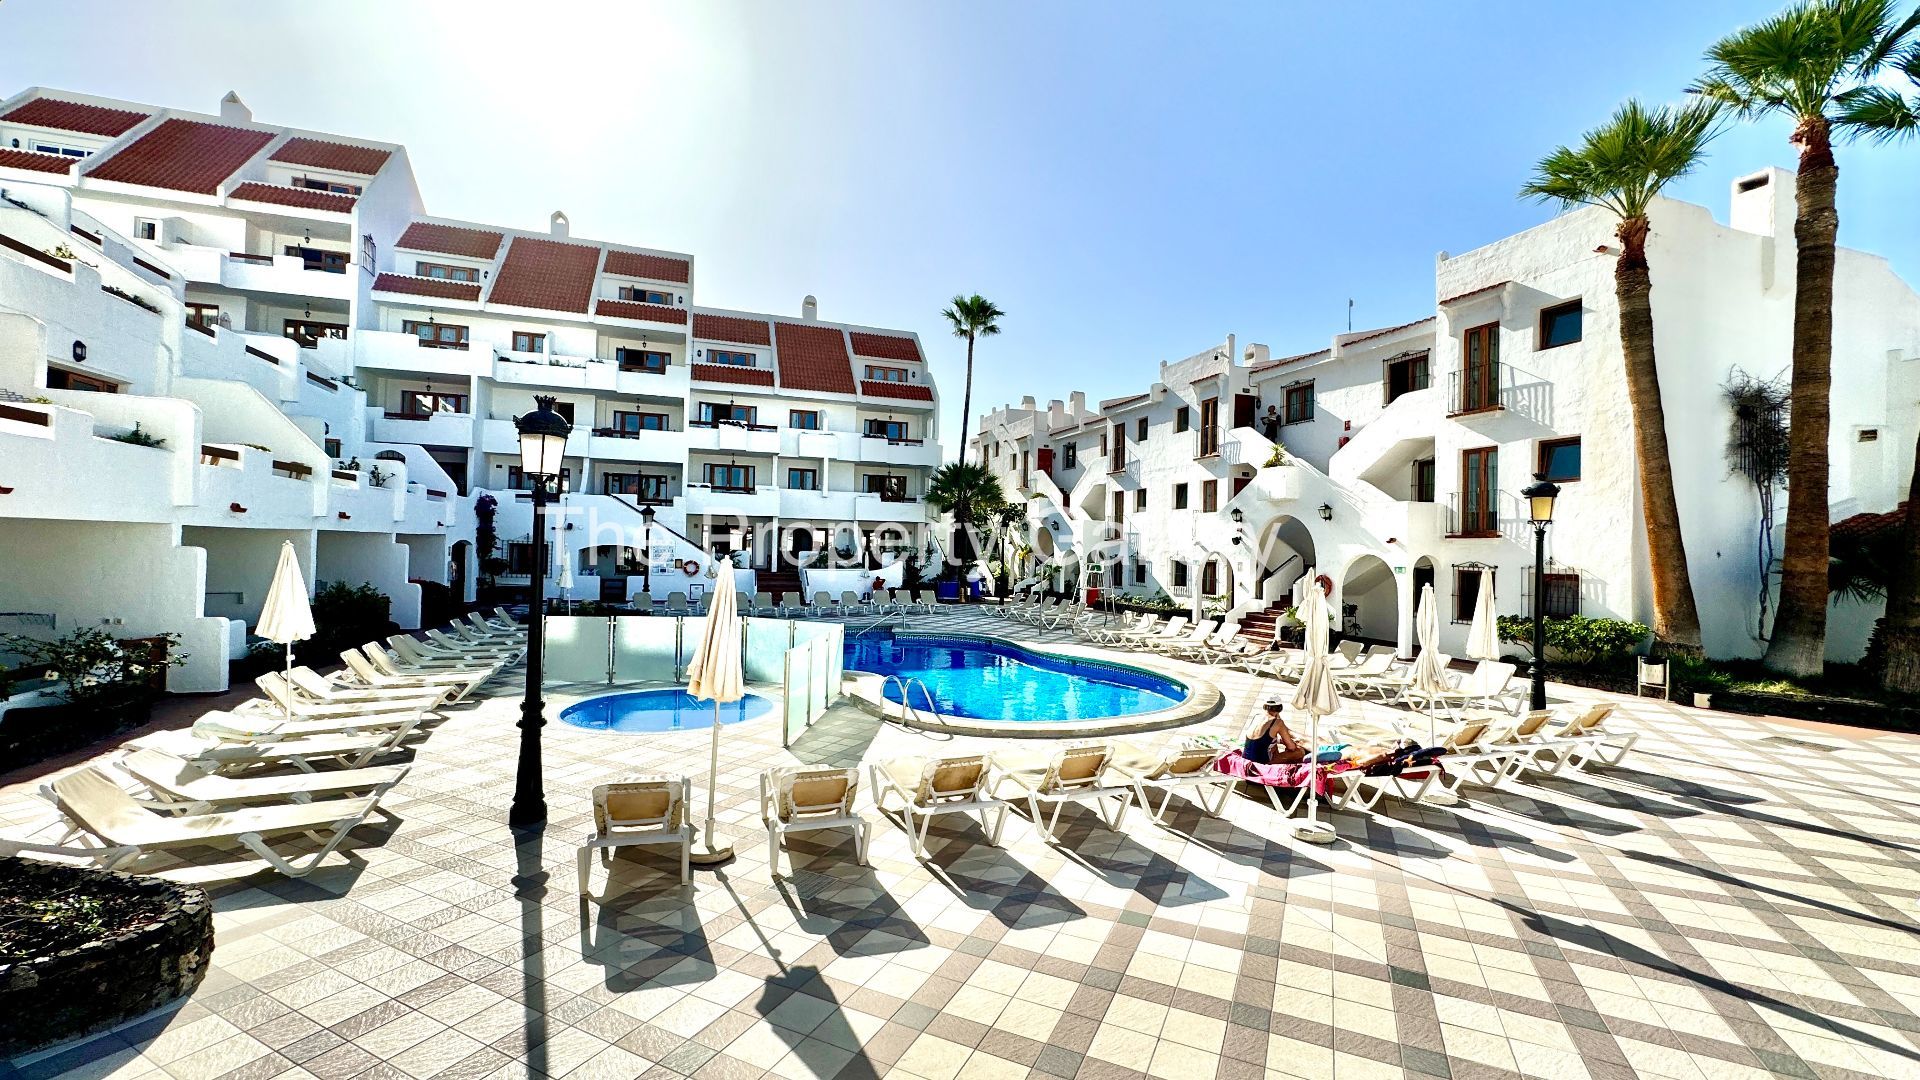 1 Bath, ApartmentFor Sale, Playa De Los Cristianos, Tenerife, 38650